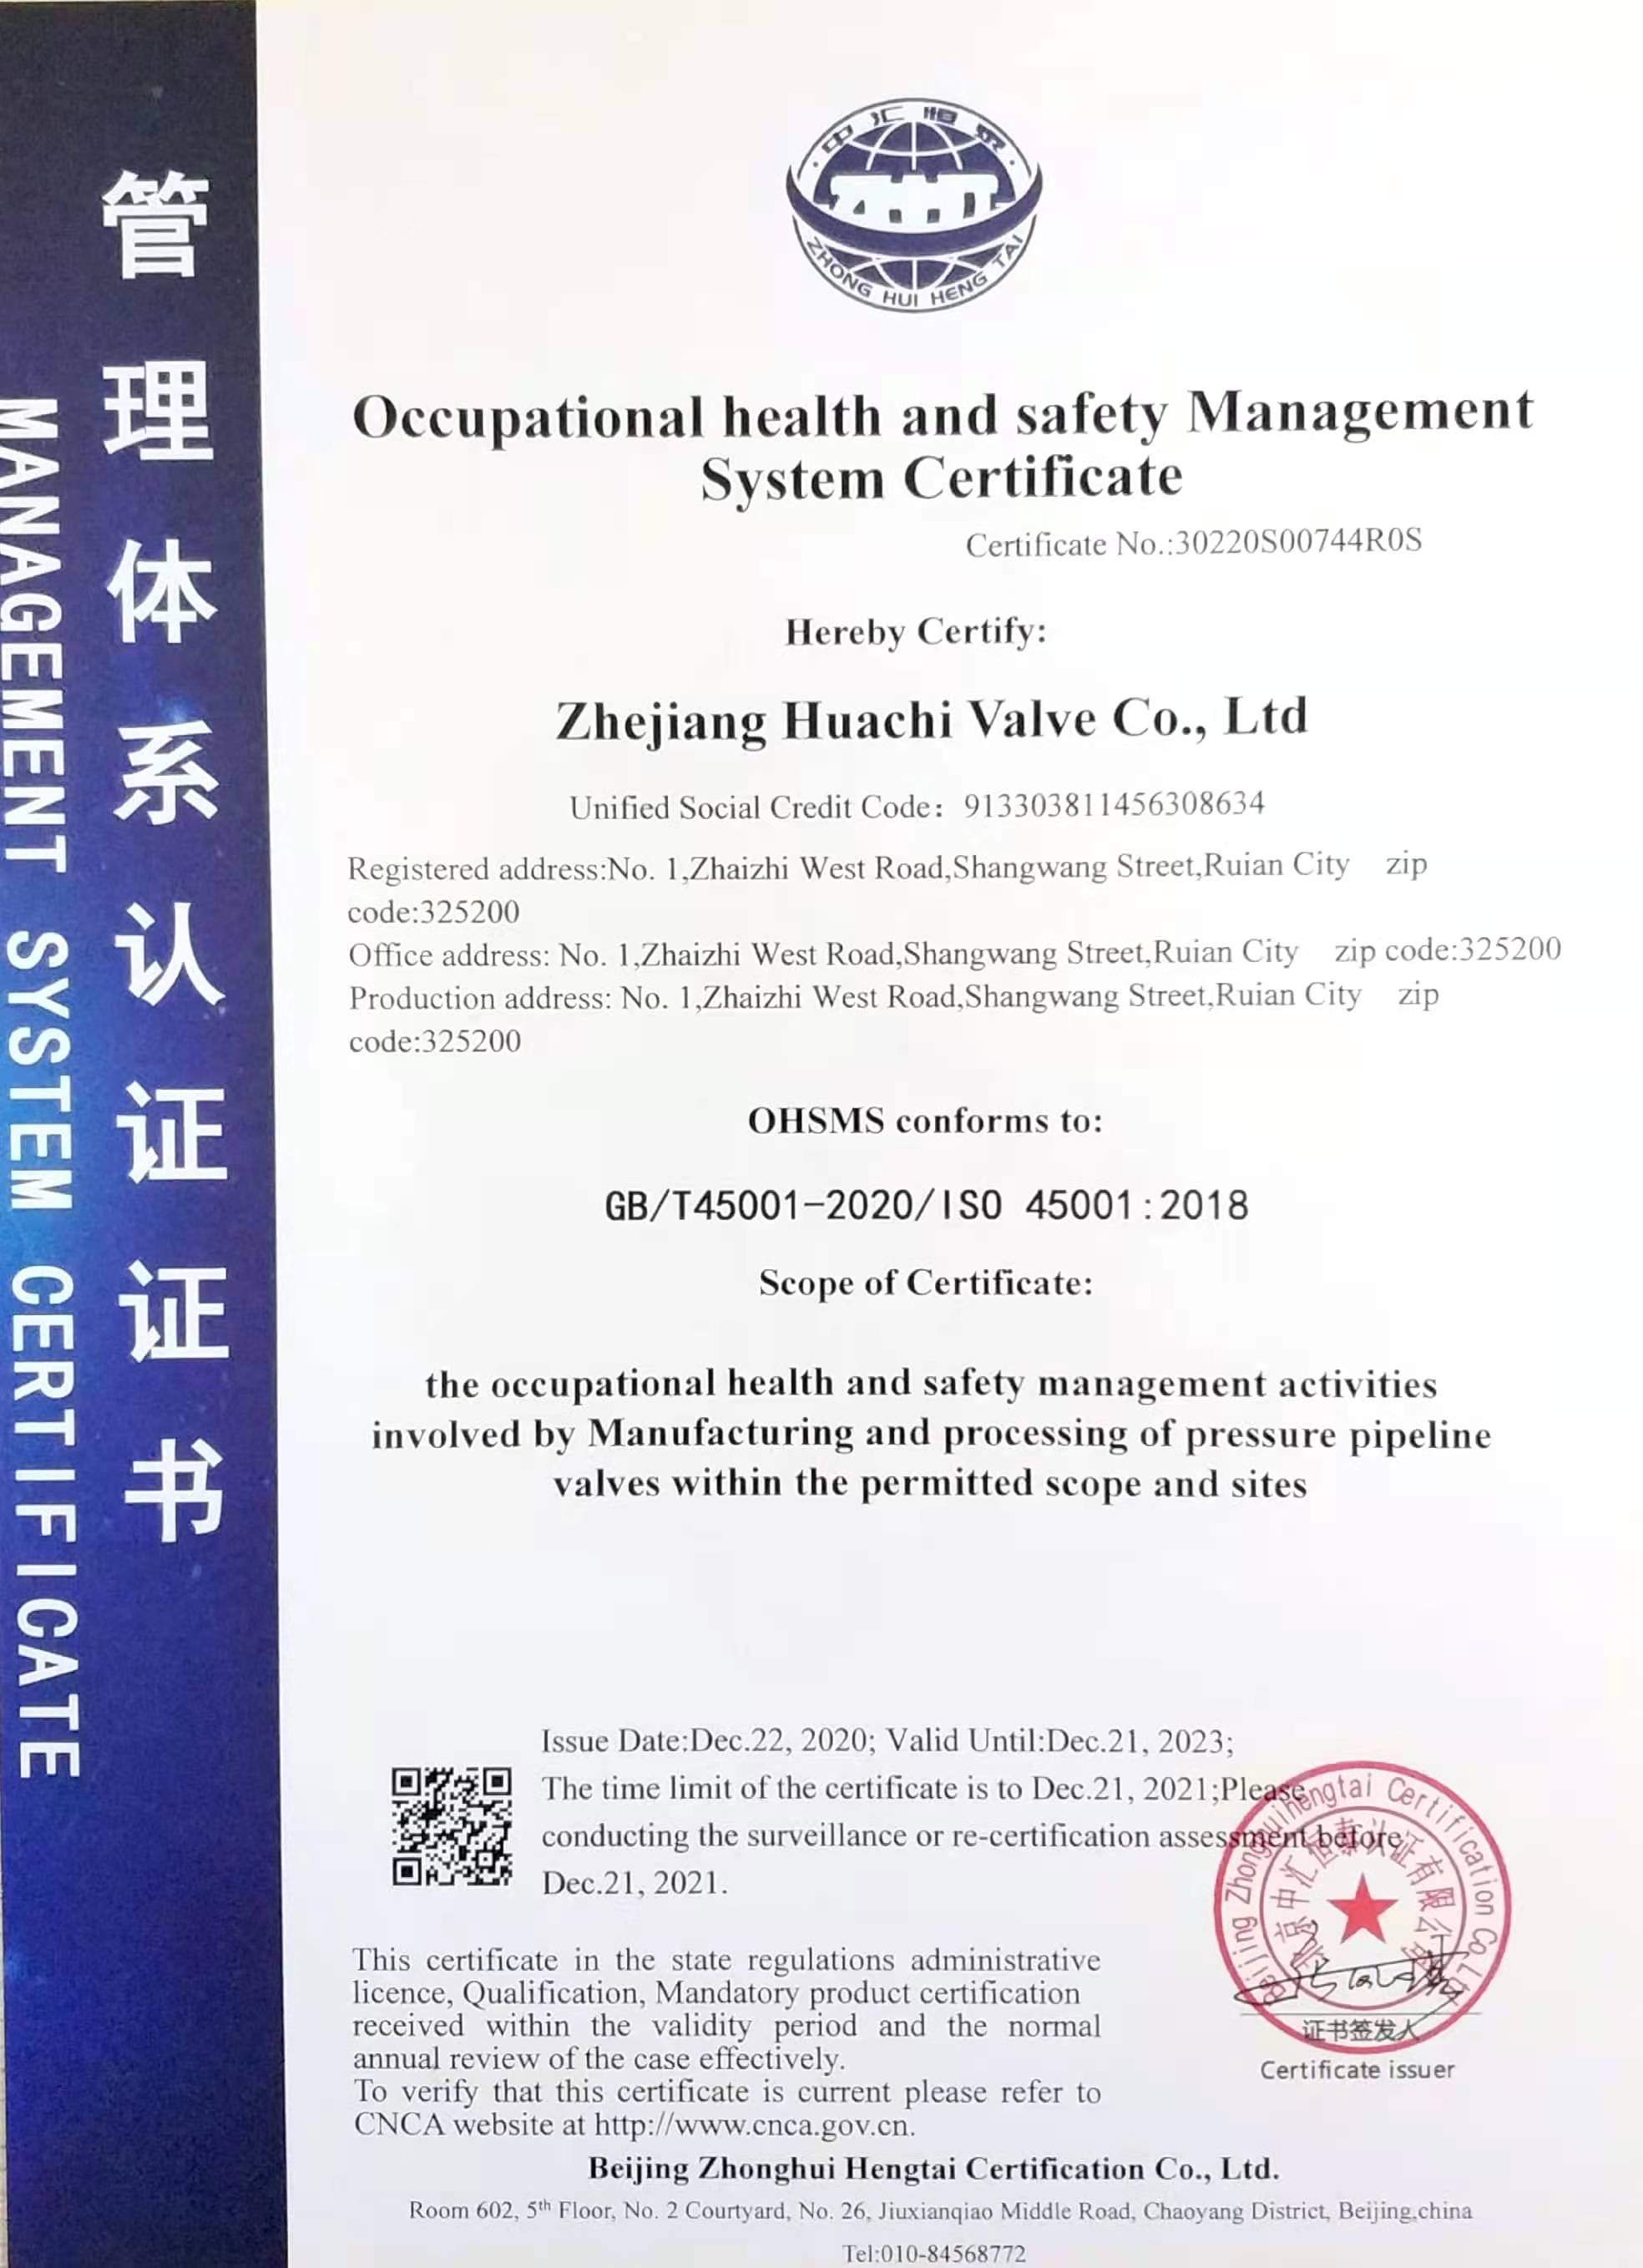 Certification du système de gestion de la santé et de la sécurité au travail